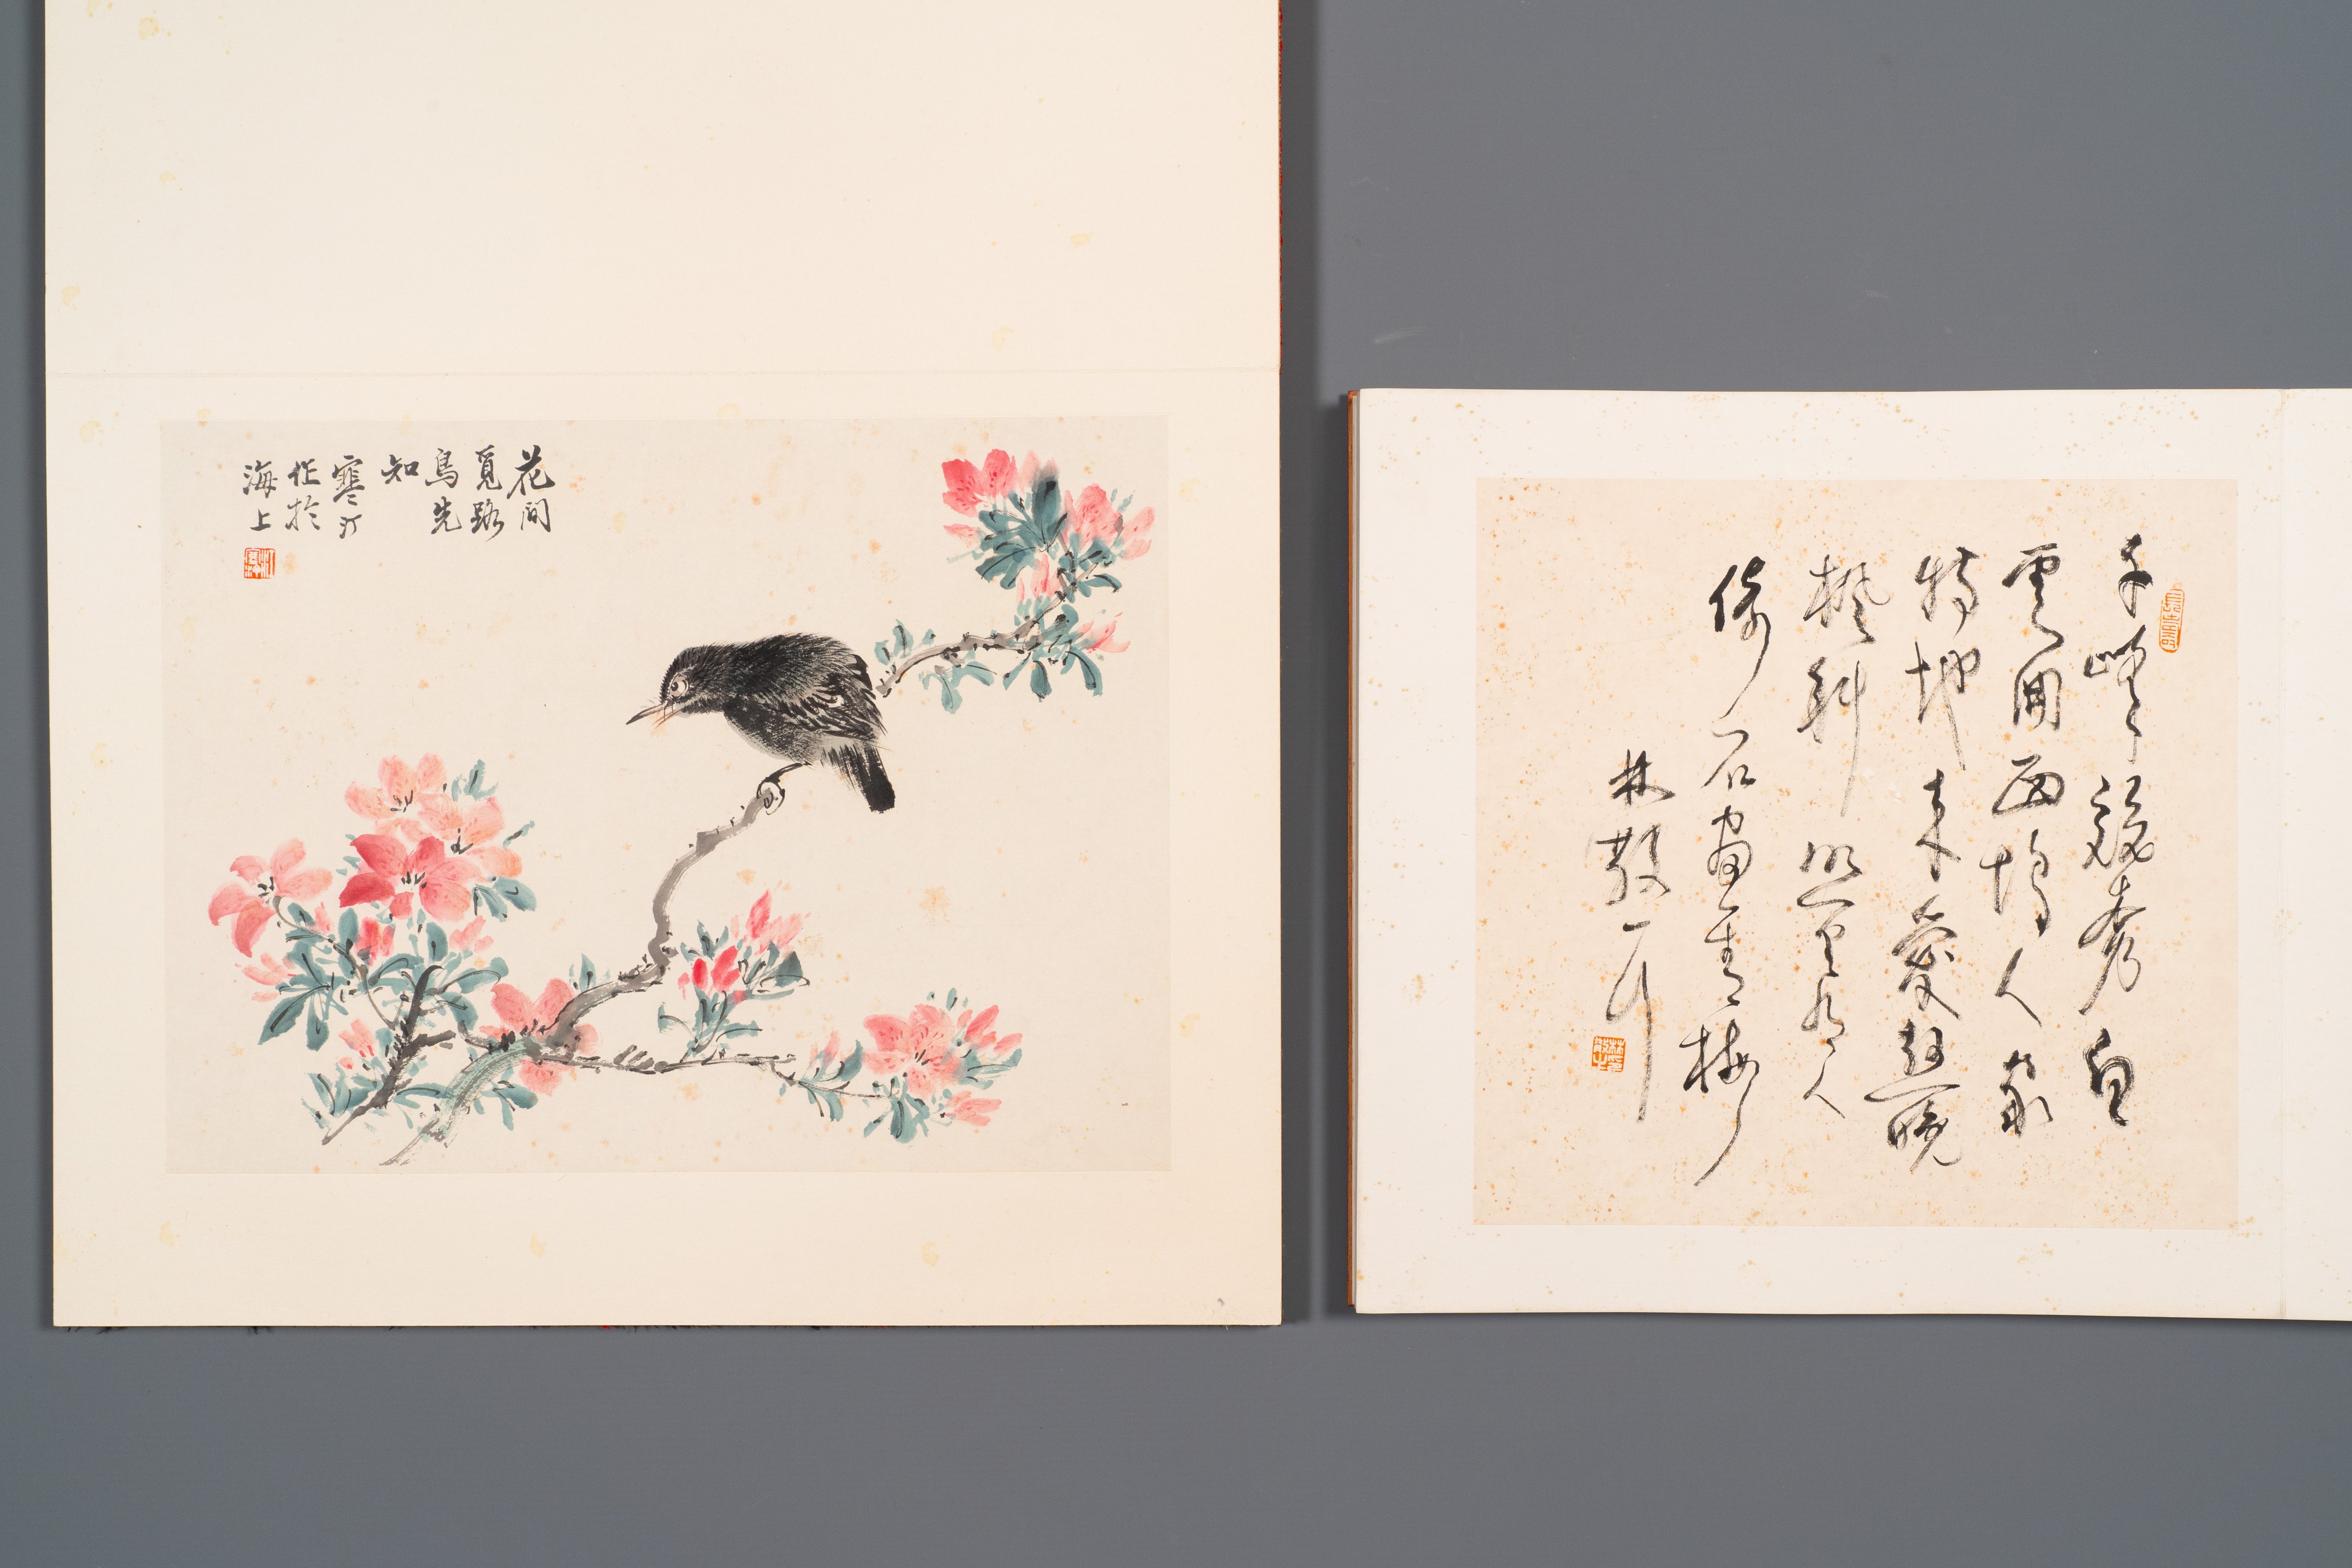 Three albums: 'Jiang Hanting æ±Ÿå¯’æ±€ (1904-1963), Lin Sanzhi æž—æ•£ä¹‹ (1898-1989) and Qi Gong å¯ - Image 6 of 23